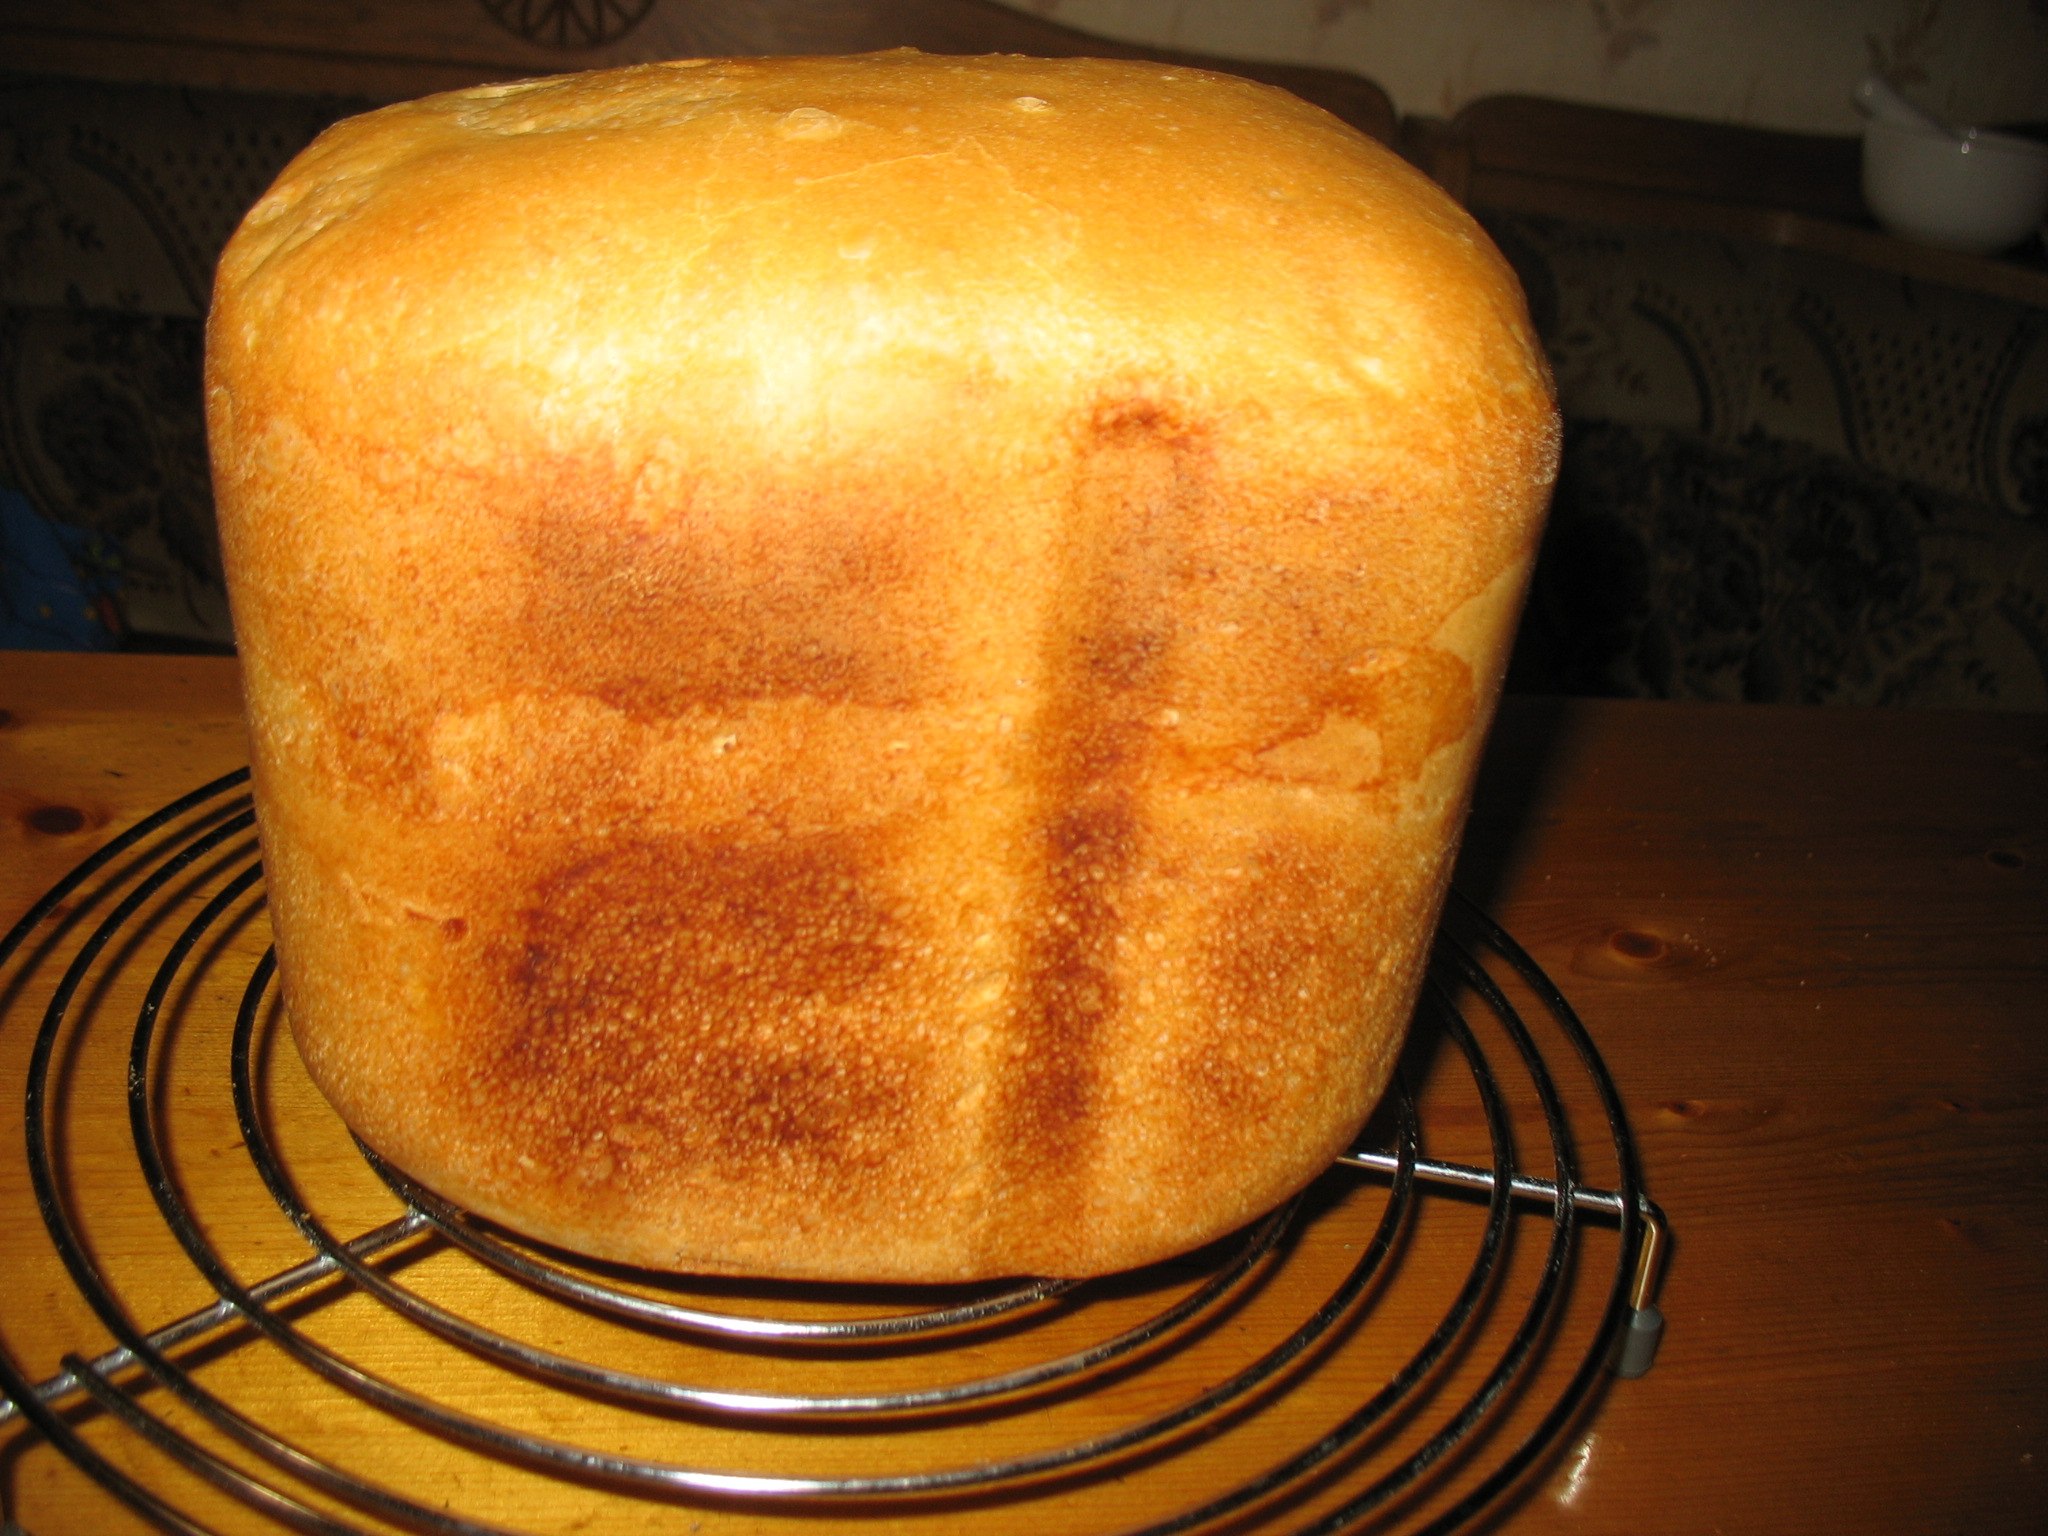 We ve got bread. Вкусный хлеб в хлебопечке. Французский хлеб в хлебопечке. Хлебопечь французский хлеб. Французская выпечка хлеба в хлебопечке.